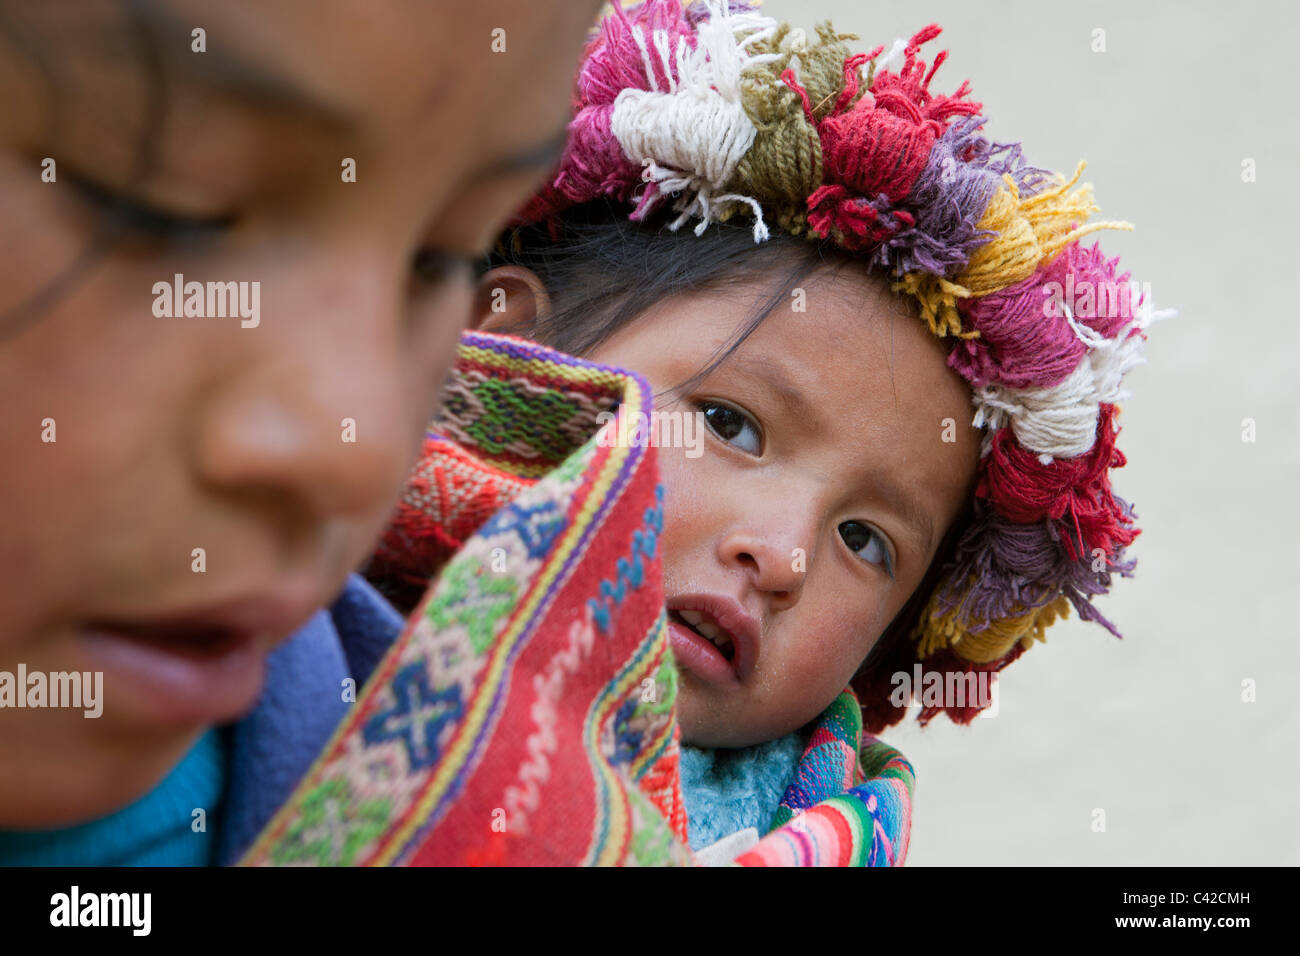 Peru, Patakancha, Patacancha, Dorf in der Nähe von Ollantaytambo. Indische Baby und Mädchen in traditioneller Tracht. Stockfoto